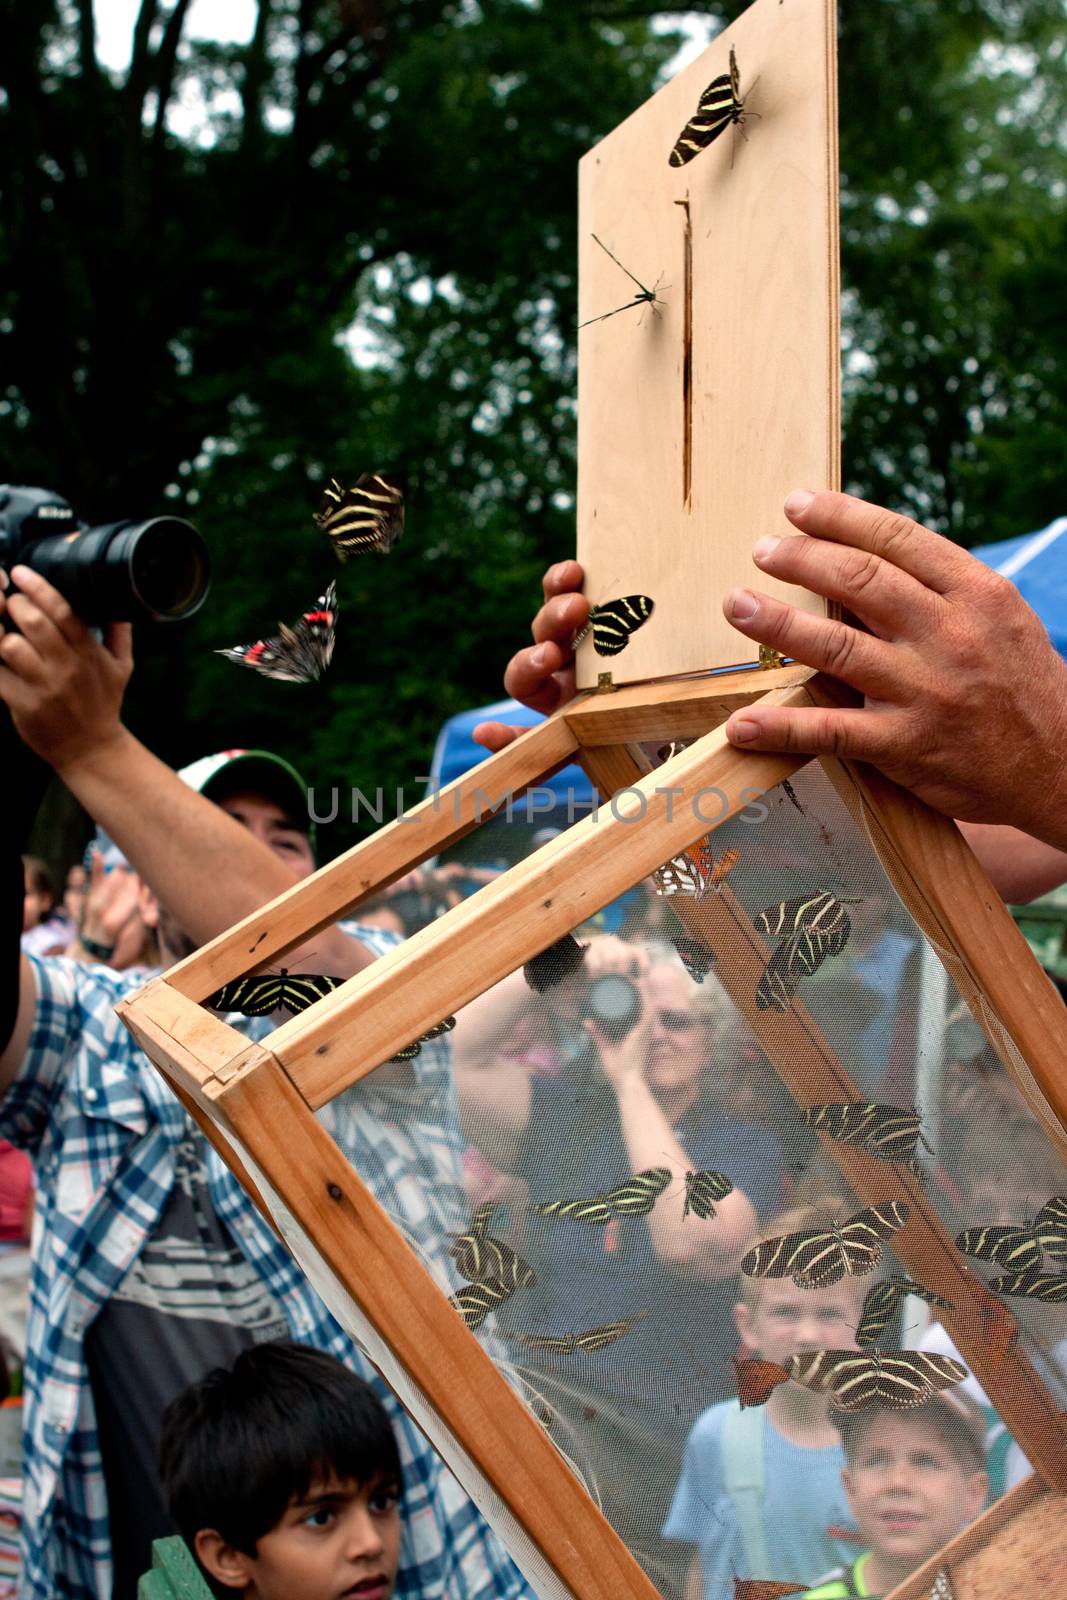 Spectators Watch Release Of Butterflies At Summer Festival by BluIz60